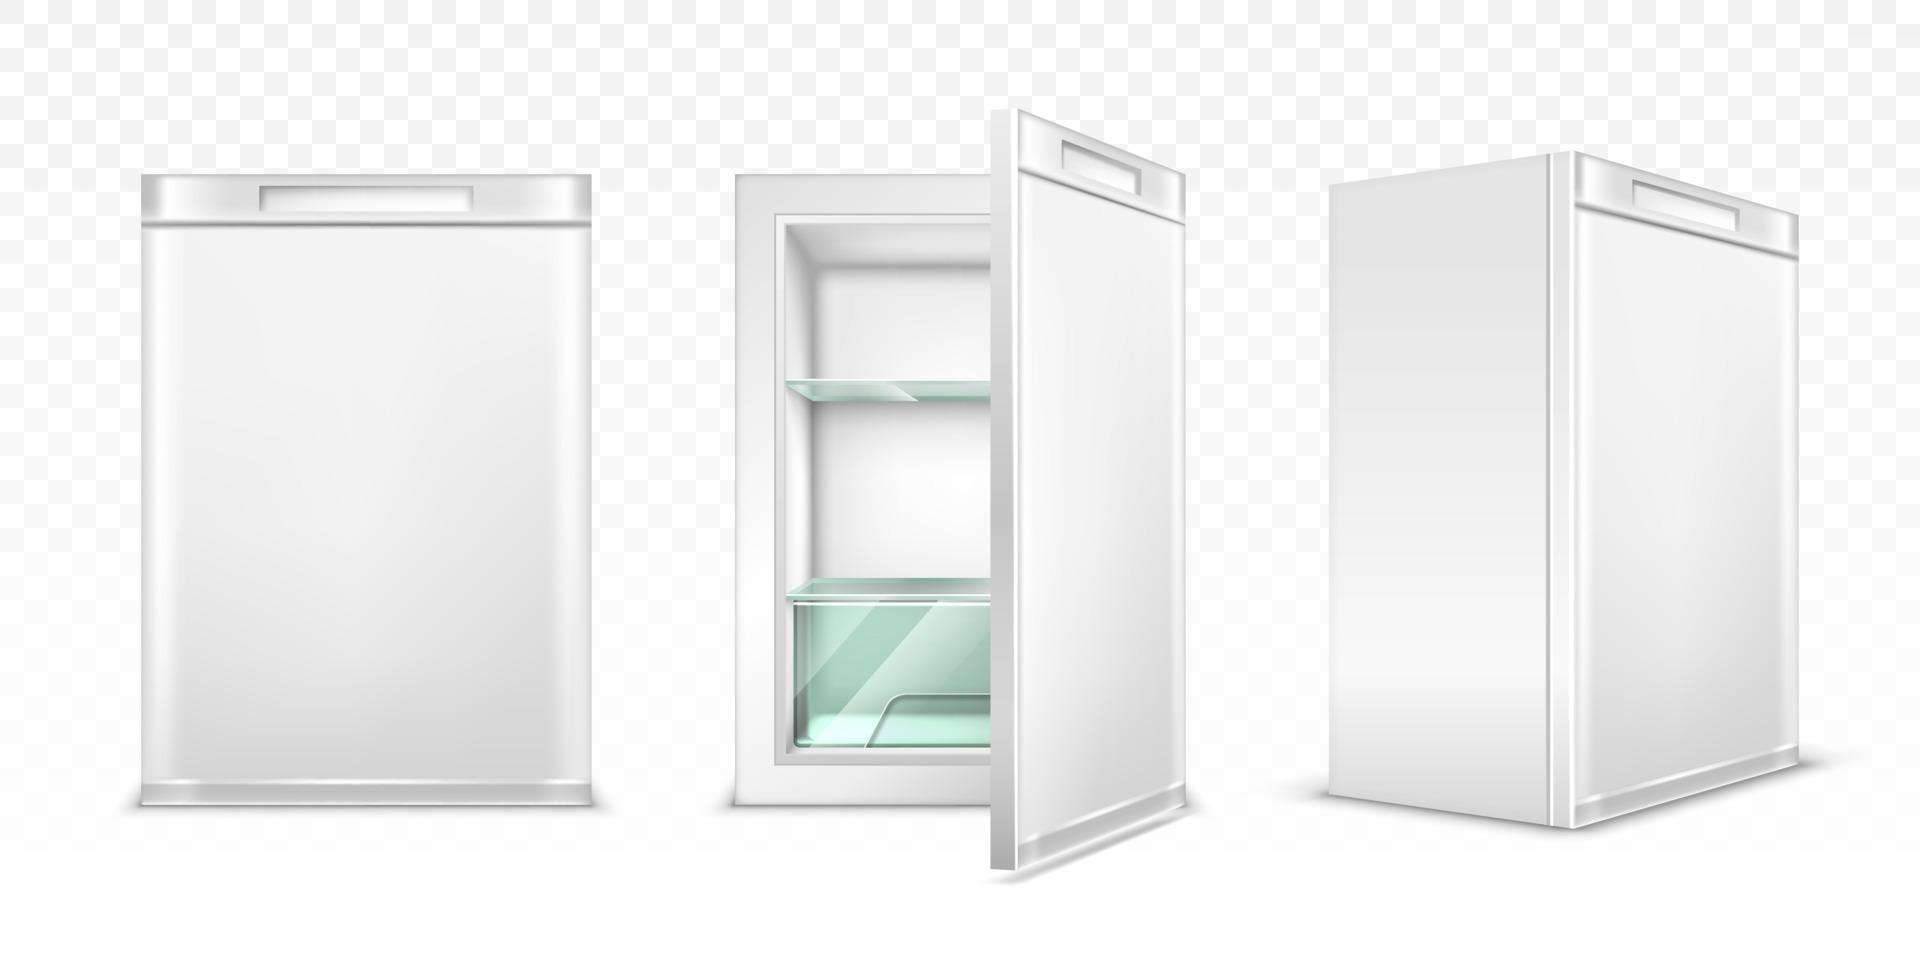 mini refrigerador, refrigerador de cocina blanco vacío vector